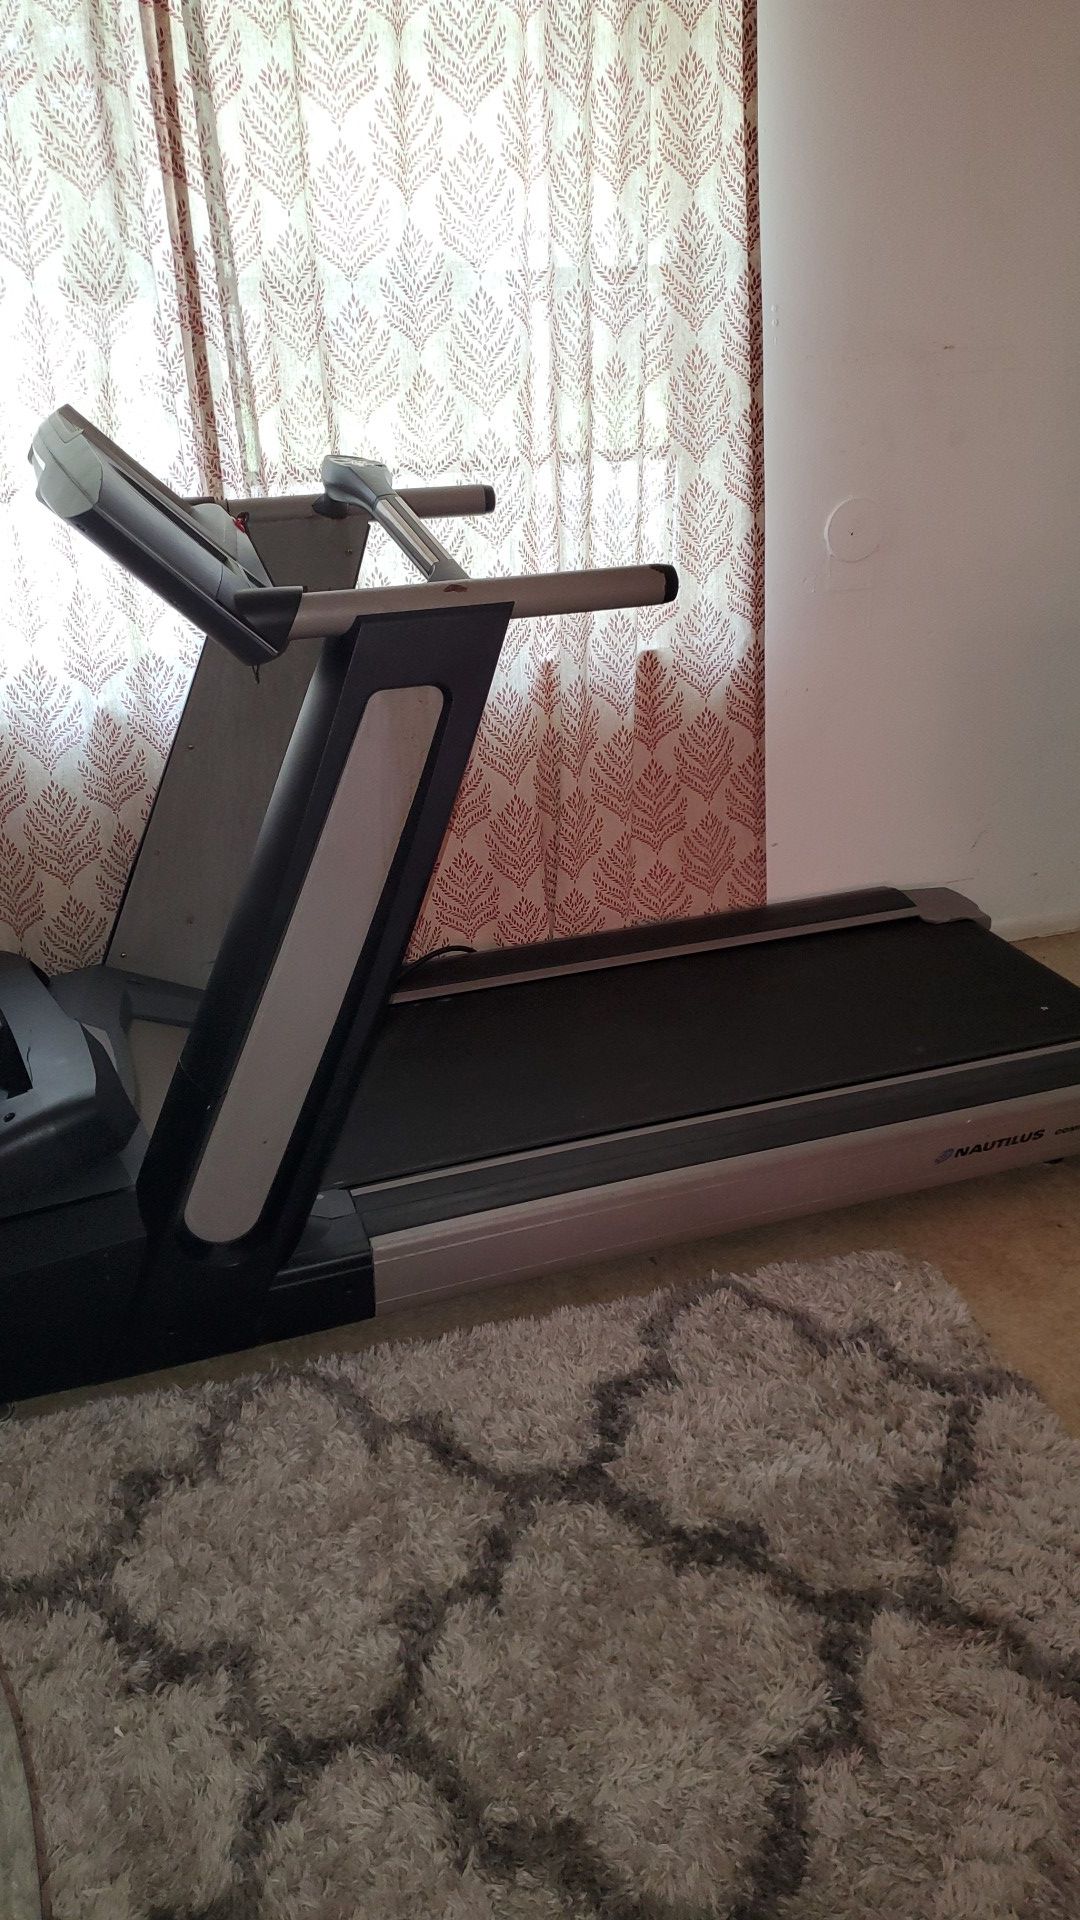 Free treadmill runner